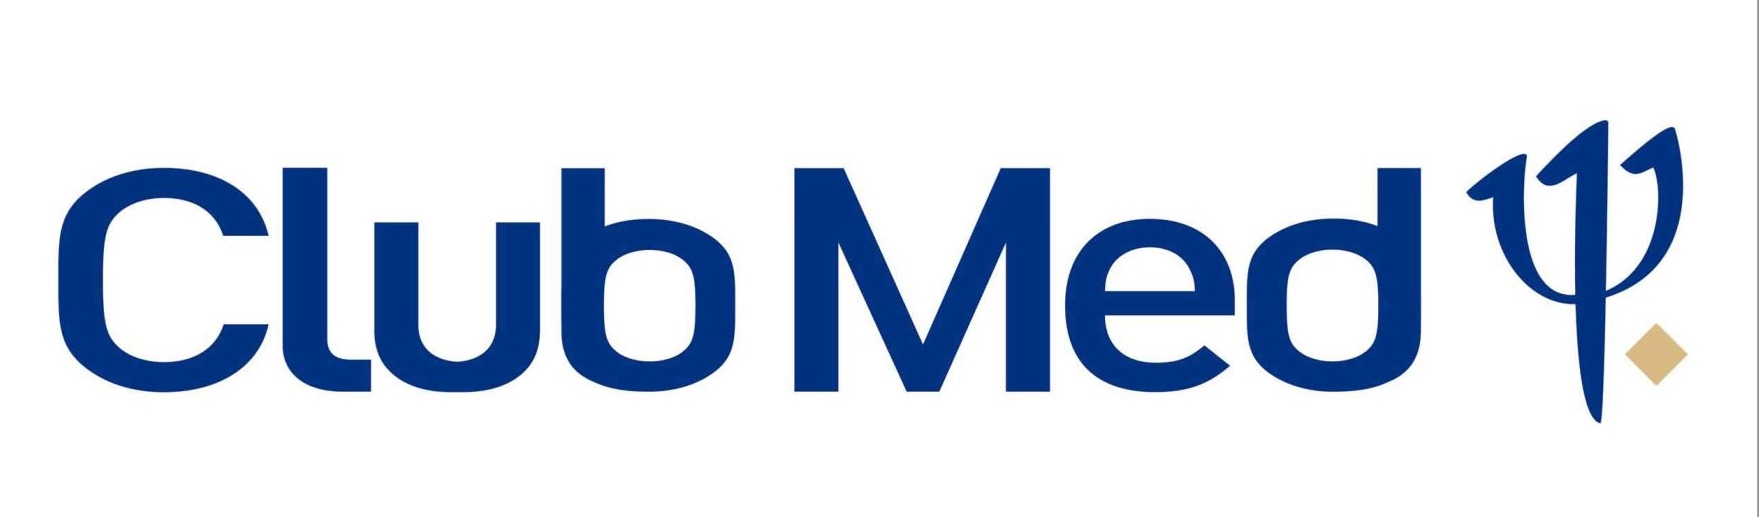 club-med-logo.jpg